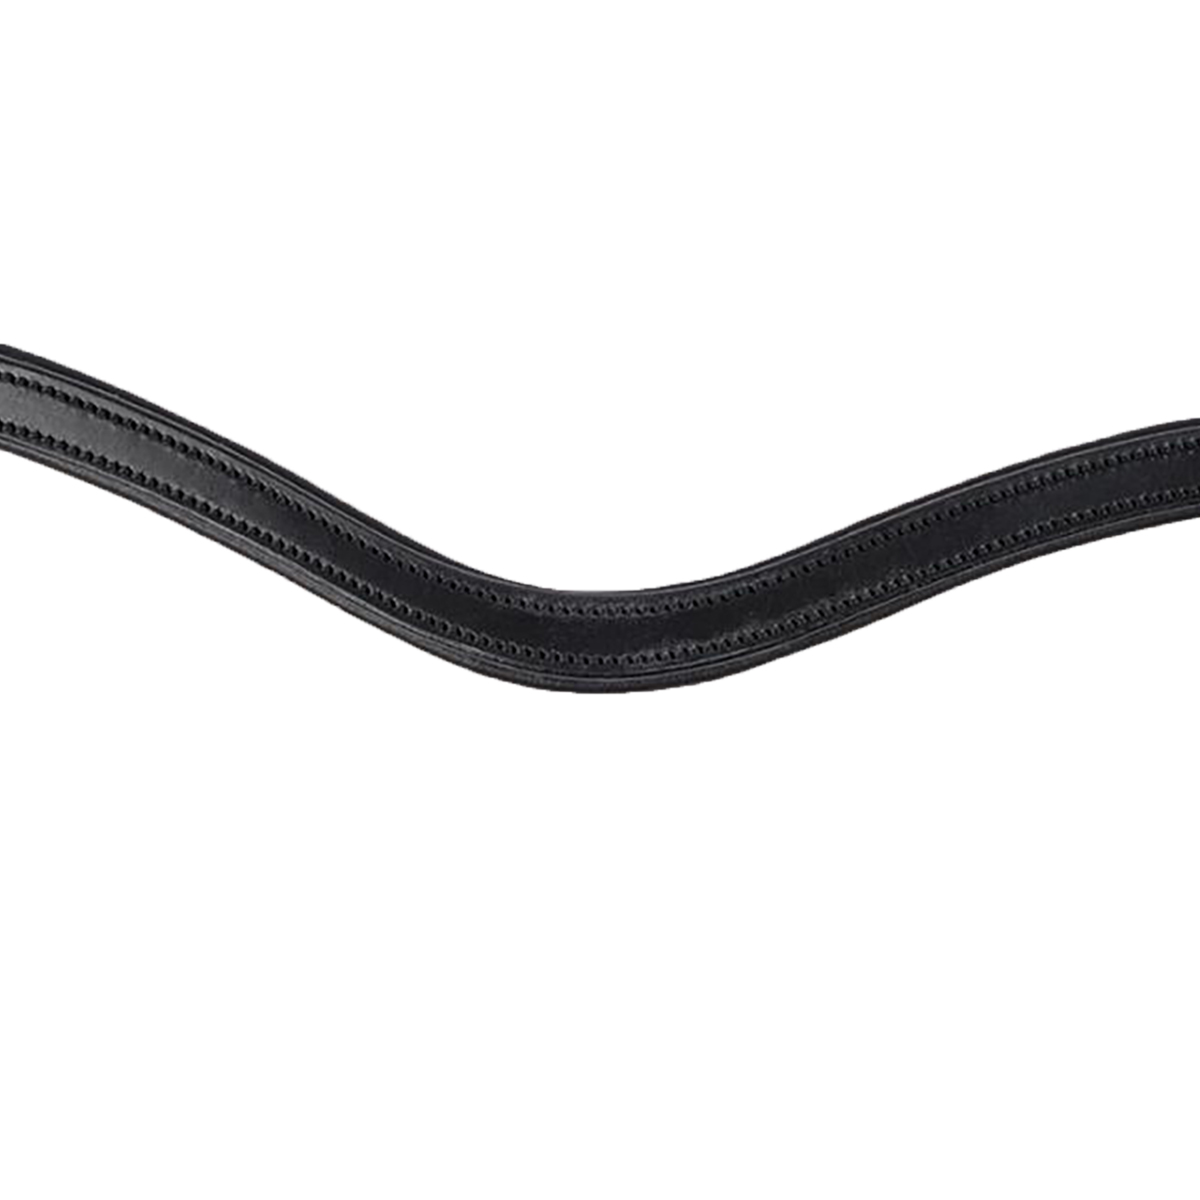 Frontriem Montar Classic Curved Zwart, PAARD in zwart